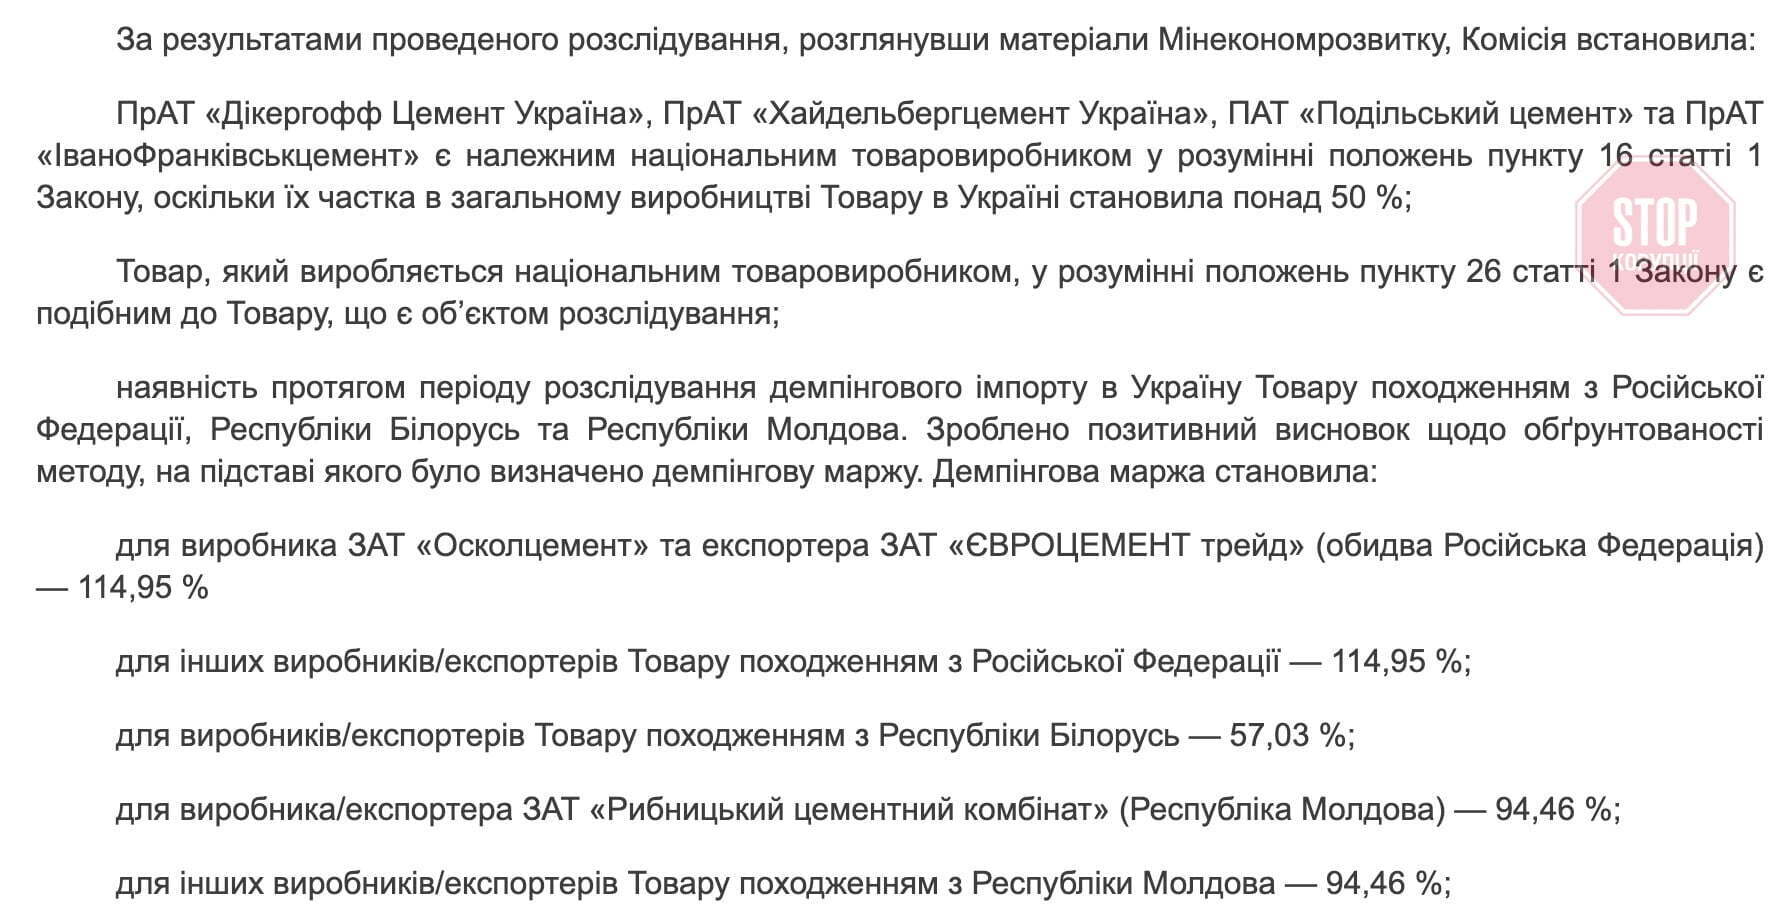  МКМТ ухвалила застосування антидемпінгових мит до цементу з РФ, Білорусі та Молдови Фото: Урядовий кур’єр